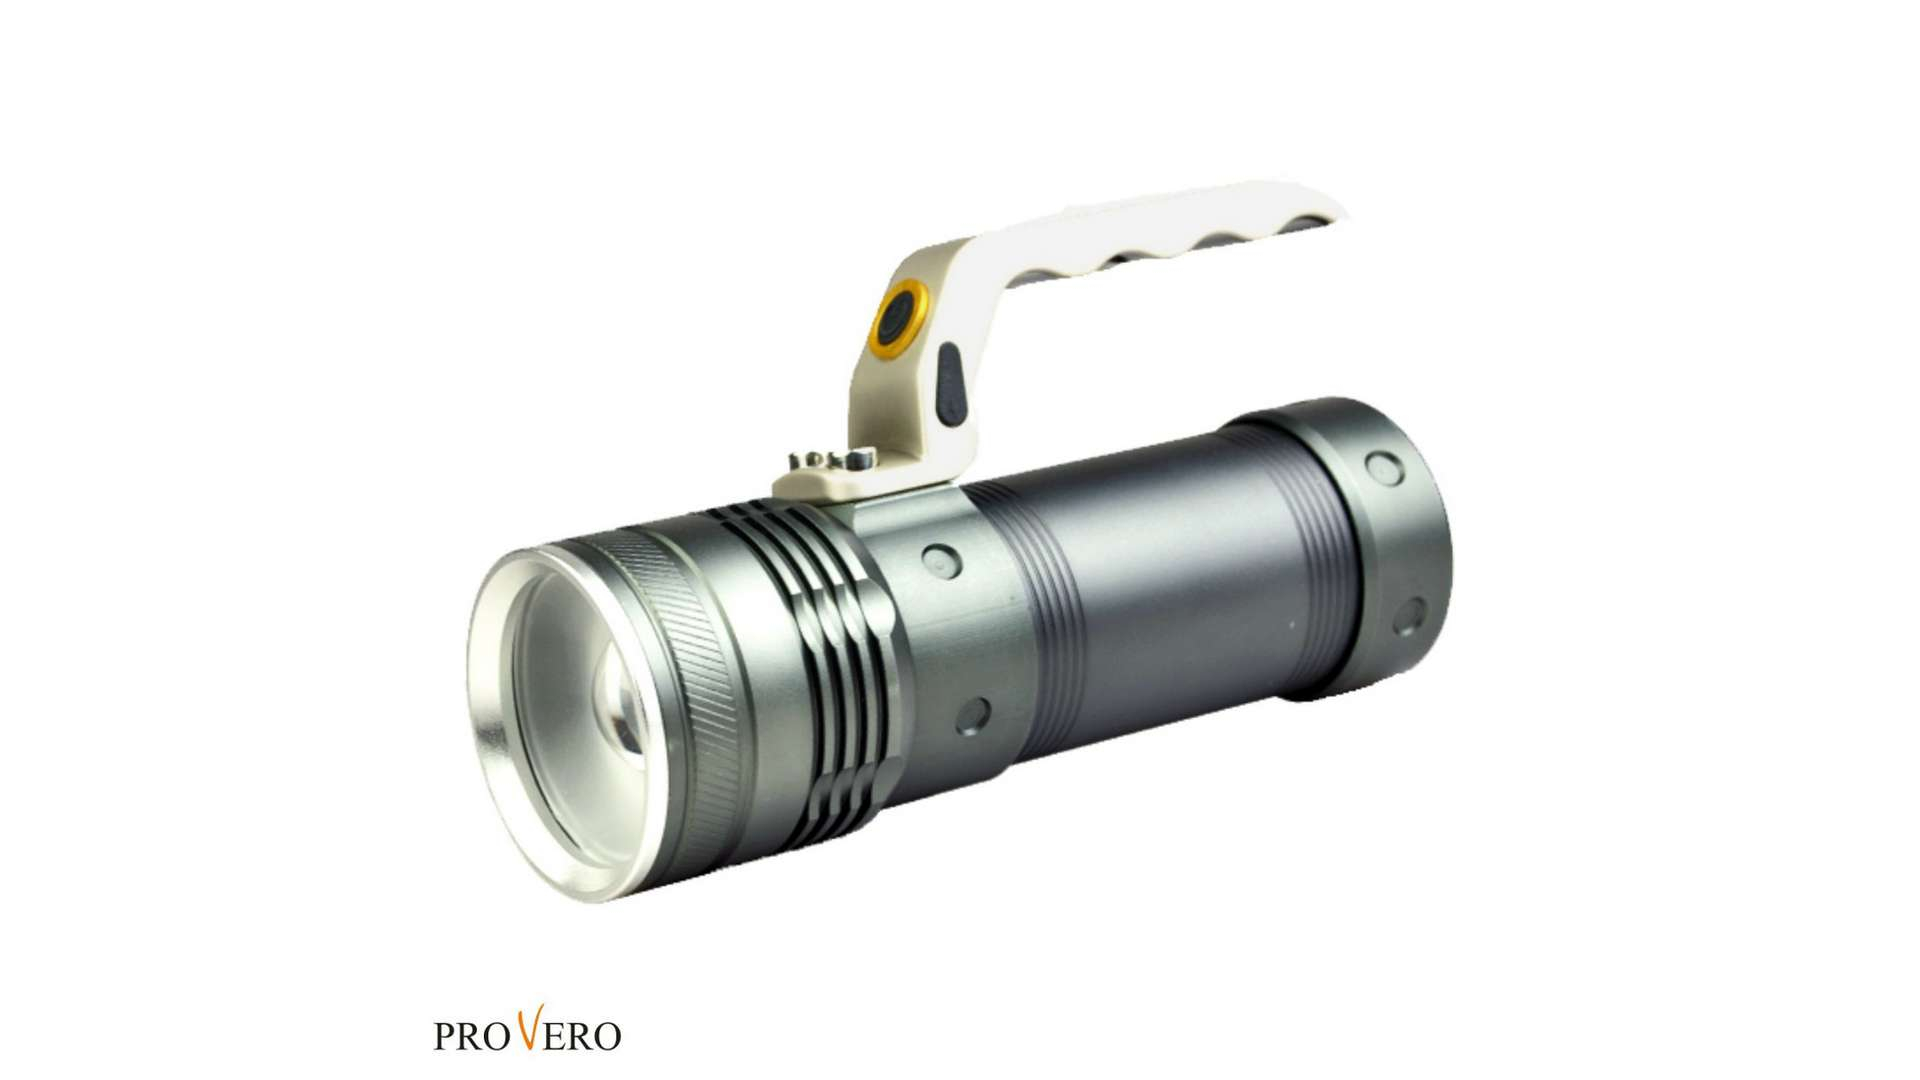 CREE XM-L T6 10W 640 lm LED flashlight + accessories